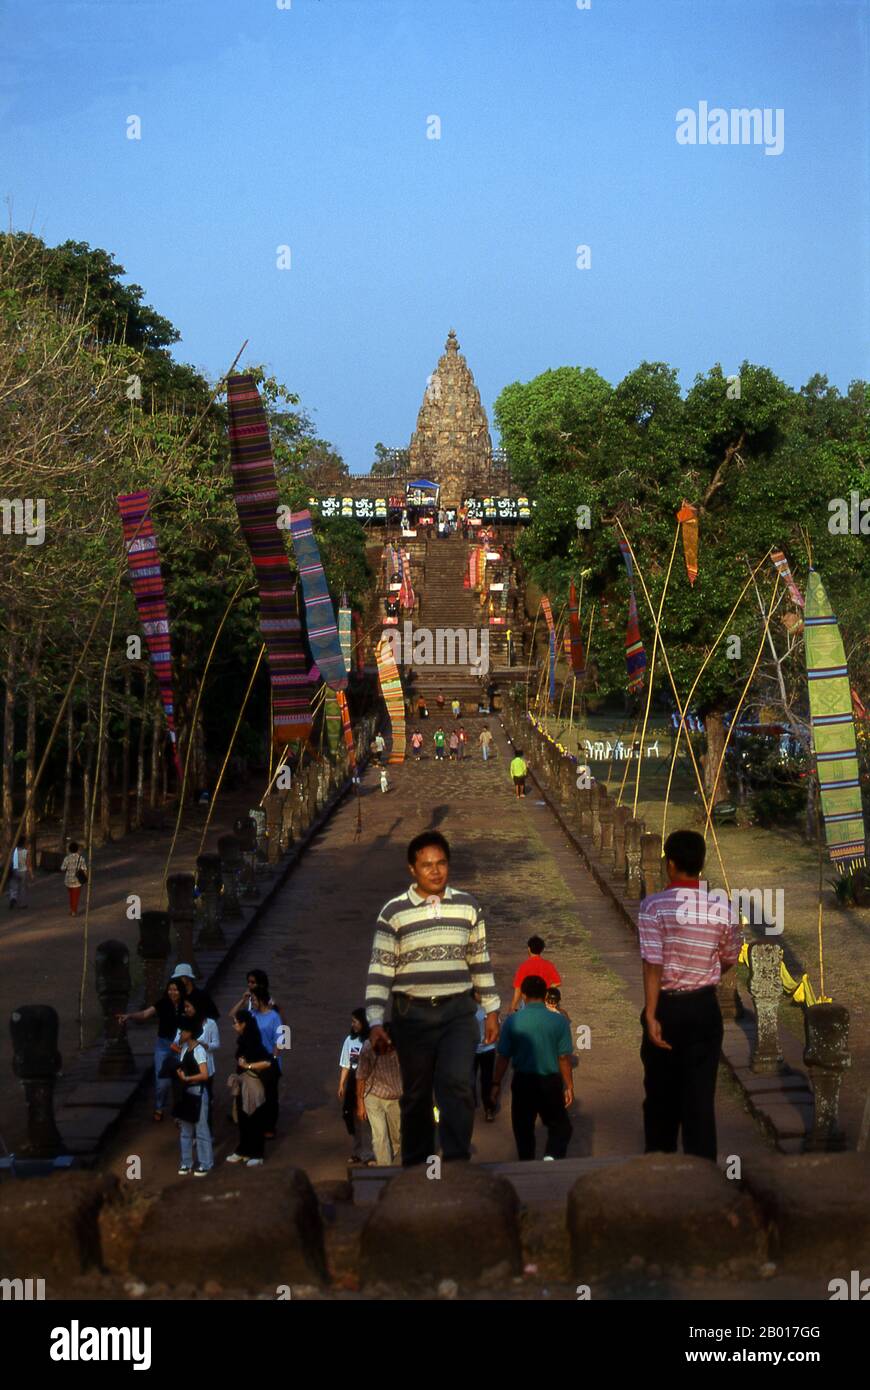 Thaïlande: Escalier en pierre à tête de Naga, Prasat Hin Phanom Rung (château en pierre de Phanom Rung), province de Buriram, nord-est de la Thaïlande.Phanom Rung est un complexe de temples Khmers situé sur le bord d'un volcan éteint à 1 320 pieds au-dessus du niveau de la mer, dans la province de Buriram, dans la région d'Isaan en Thaïlande.Il a été construit en grès et en laterite au cours des 10th à 13th siècles.C'était un sanctuaire hindou dédié à Shiva, et symbolise le Mont Kailash, sa demeure céleste. Banque D'Images